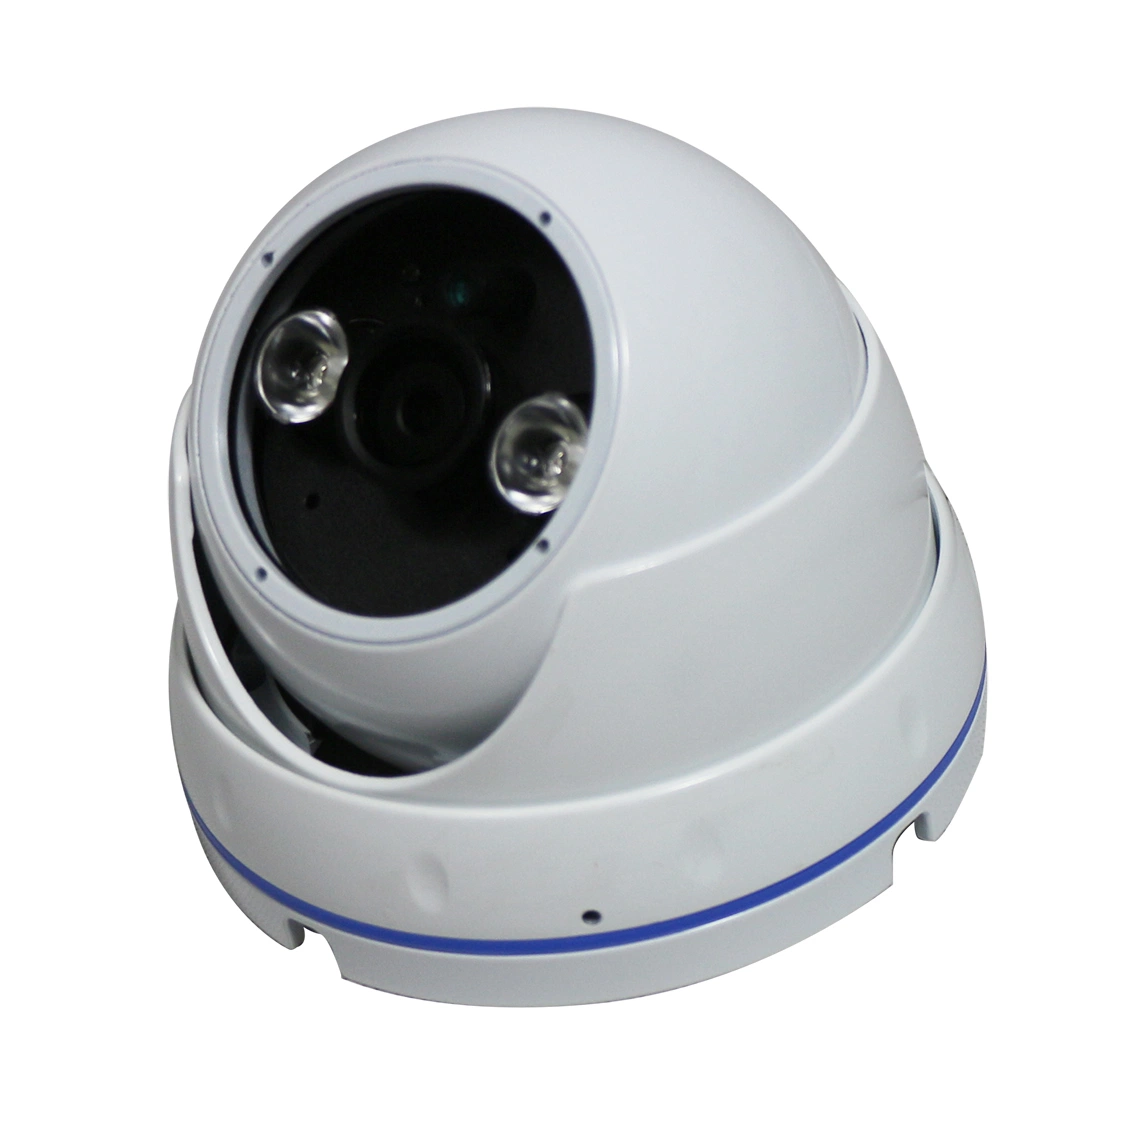 Profesional de alta resolución eco sistema PA IP SIP Cámara IP de seguridad de red de alta velocidad de la cámara domo de infrarrojos con un alto rendimiento